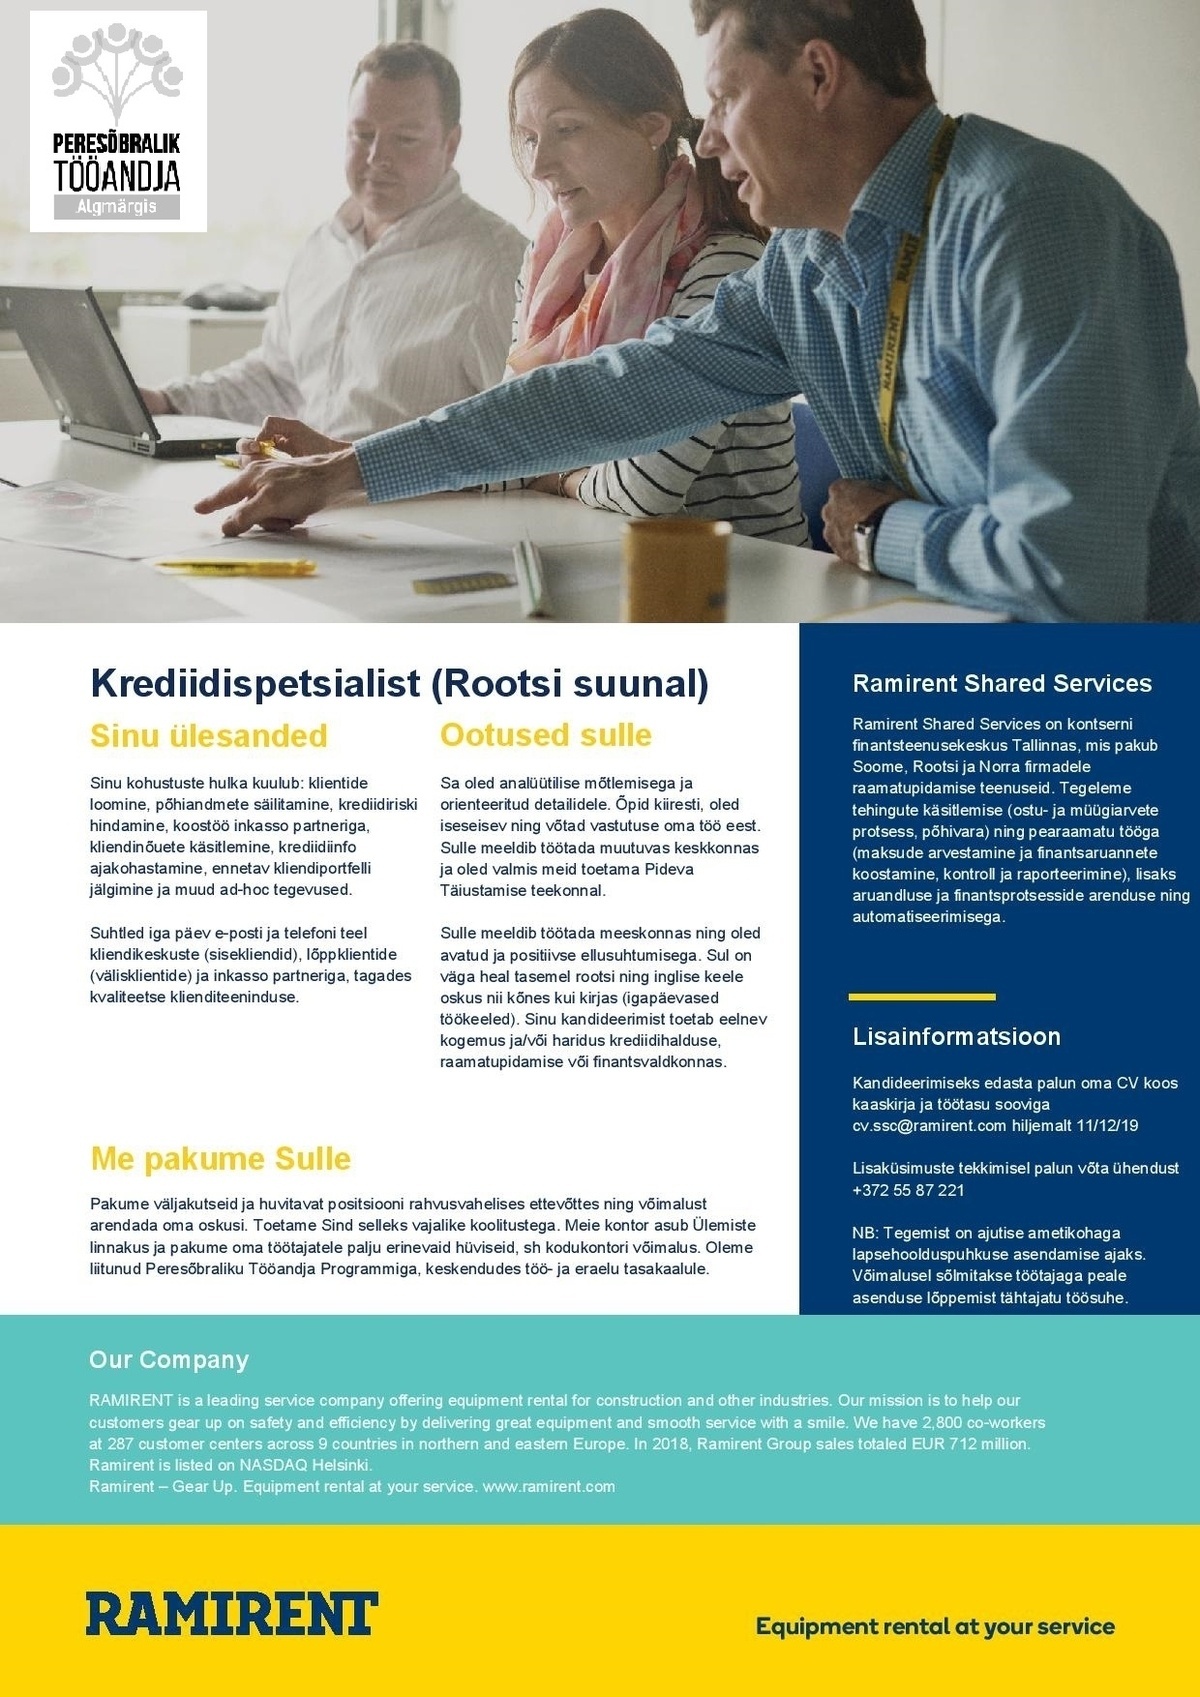 Ramirent Shared Services AS Krediidispetsialist (rootsi suunal)